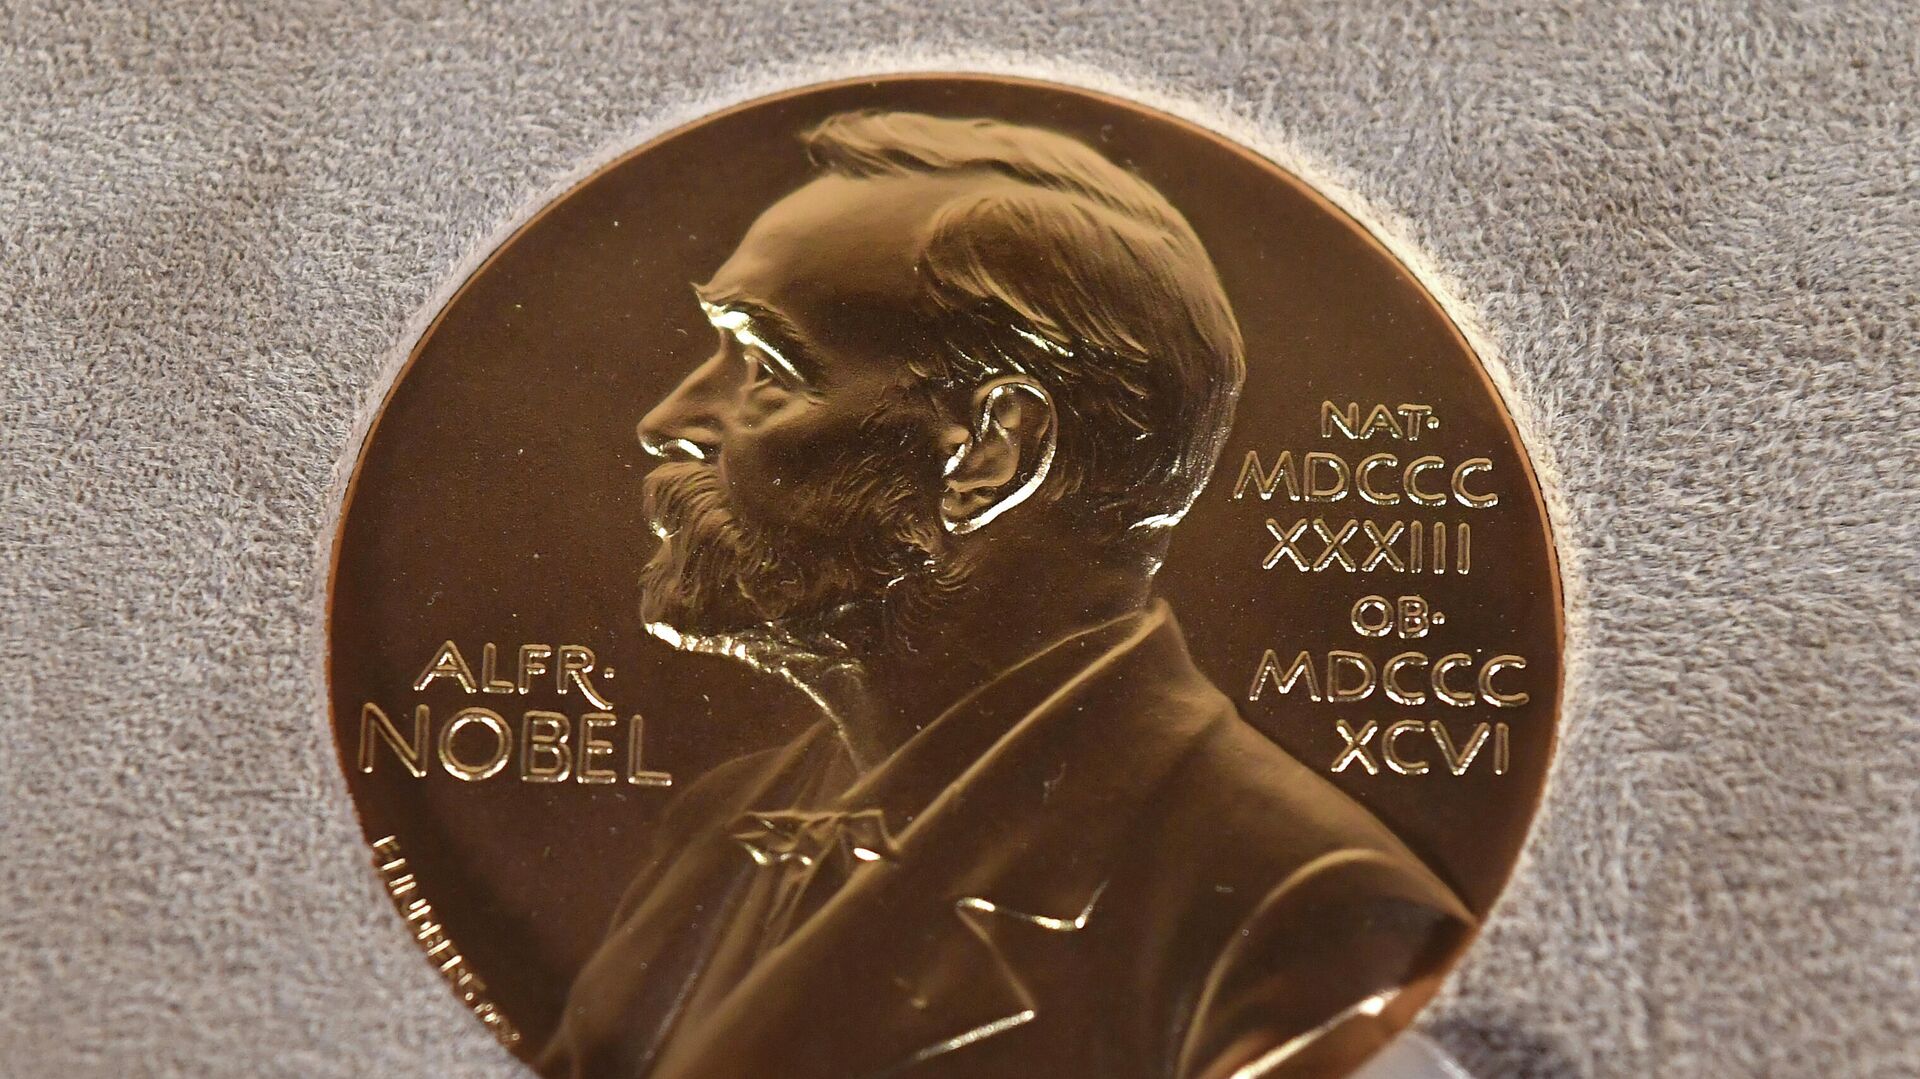 Медаль Нобелевской премии, фото из архива - Sputnik Азербайджан, 1920, 11.10.2021